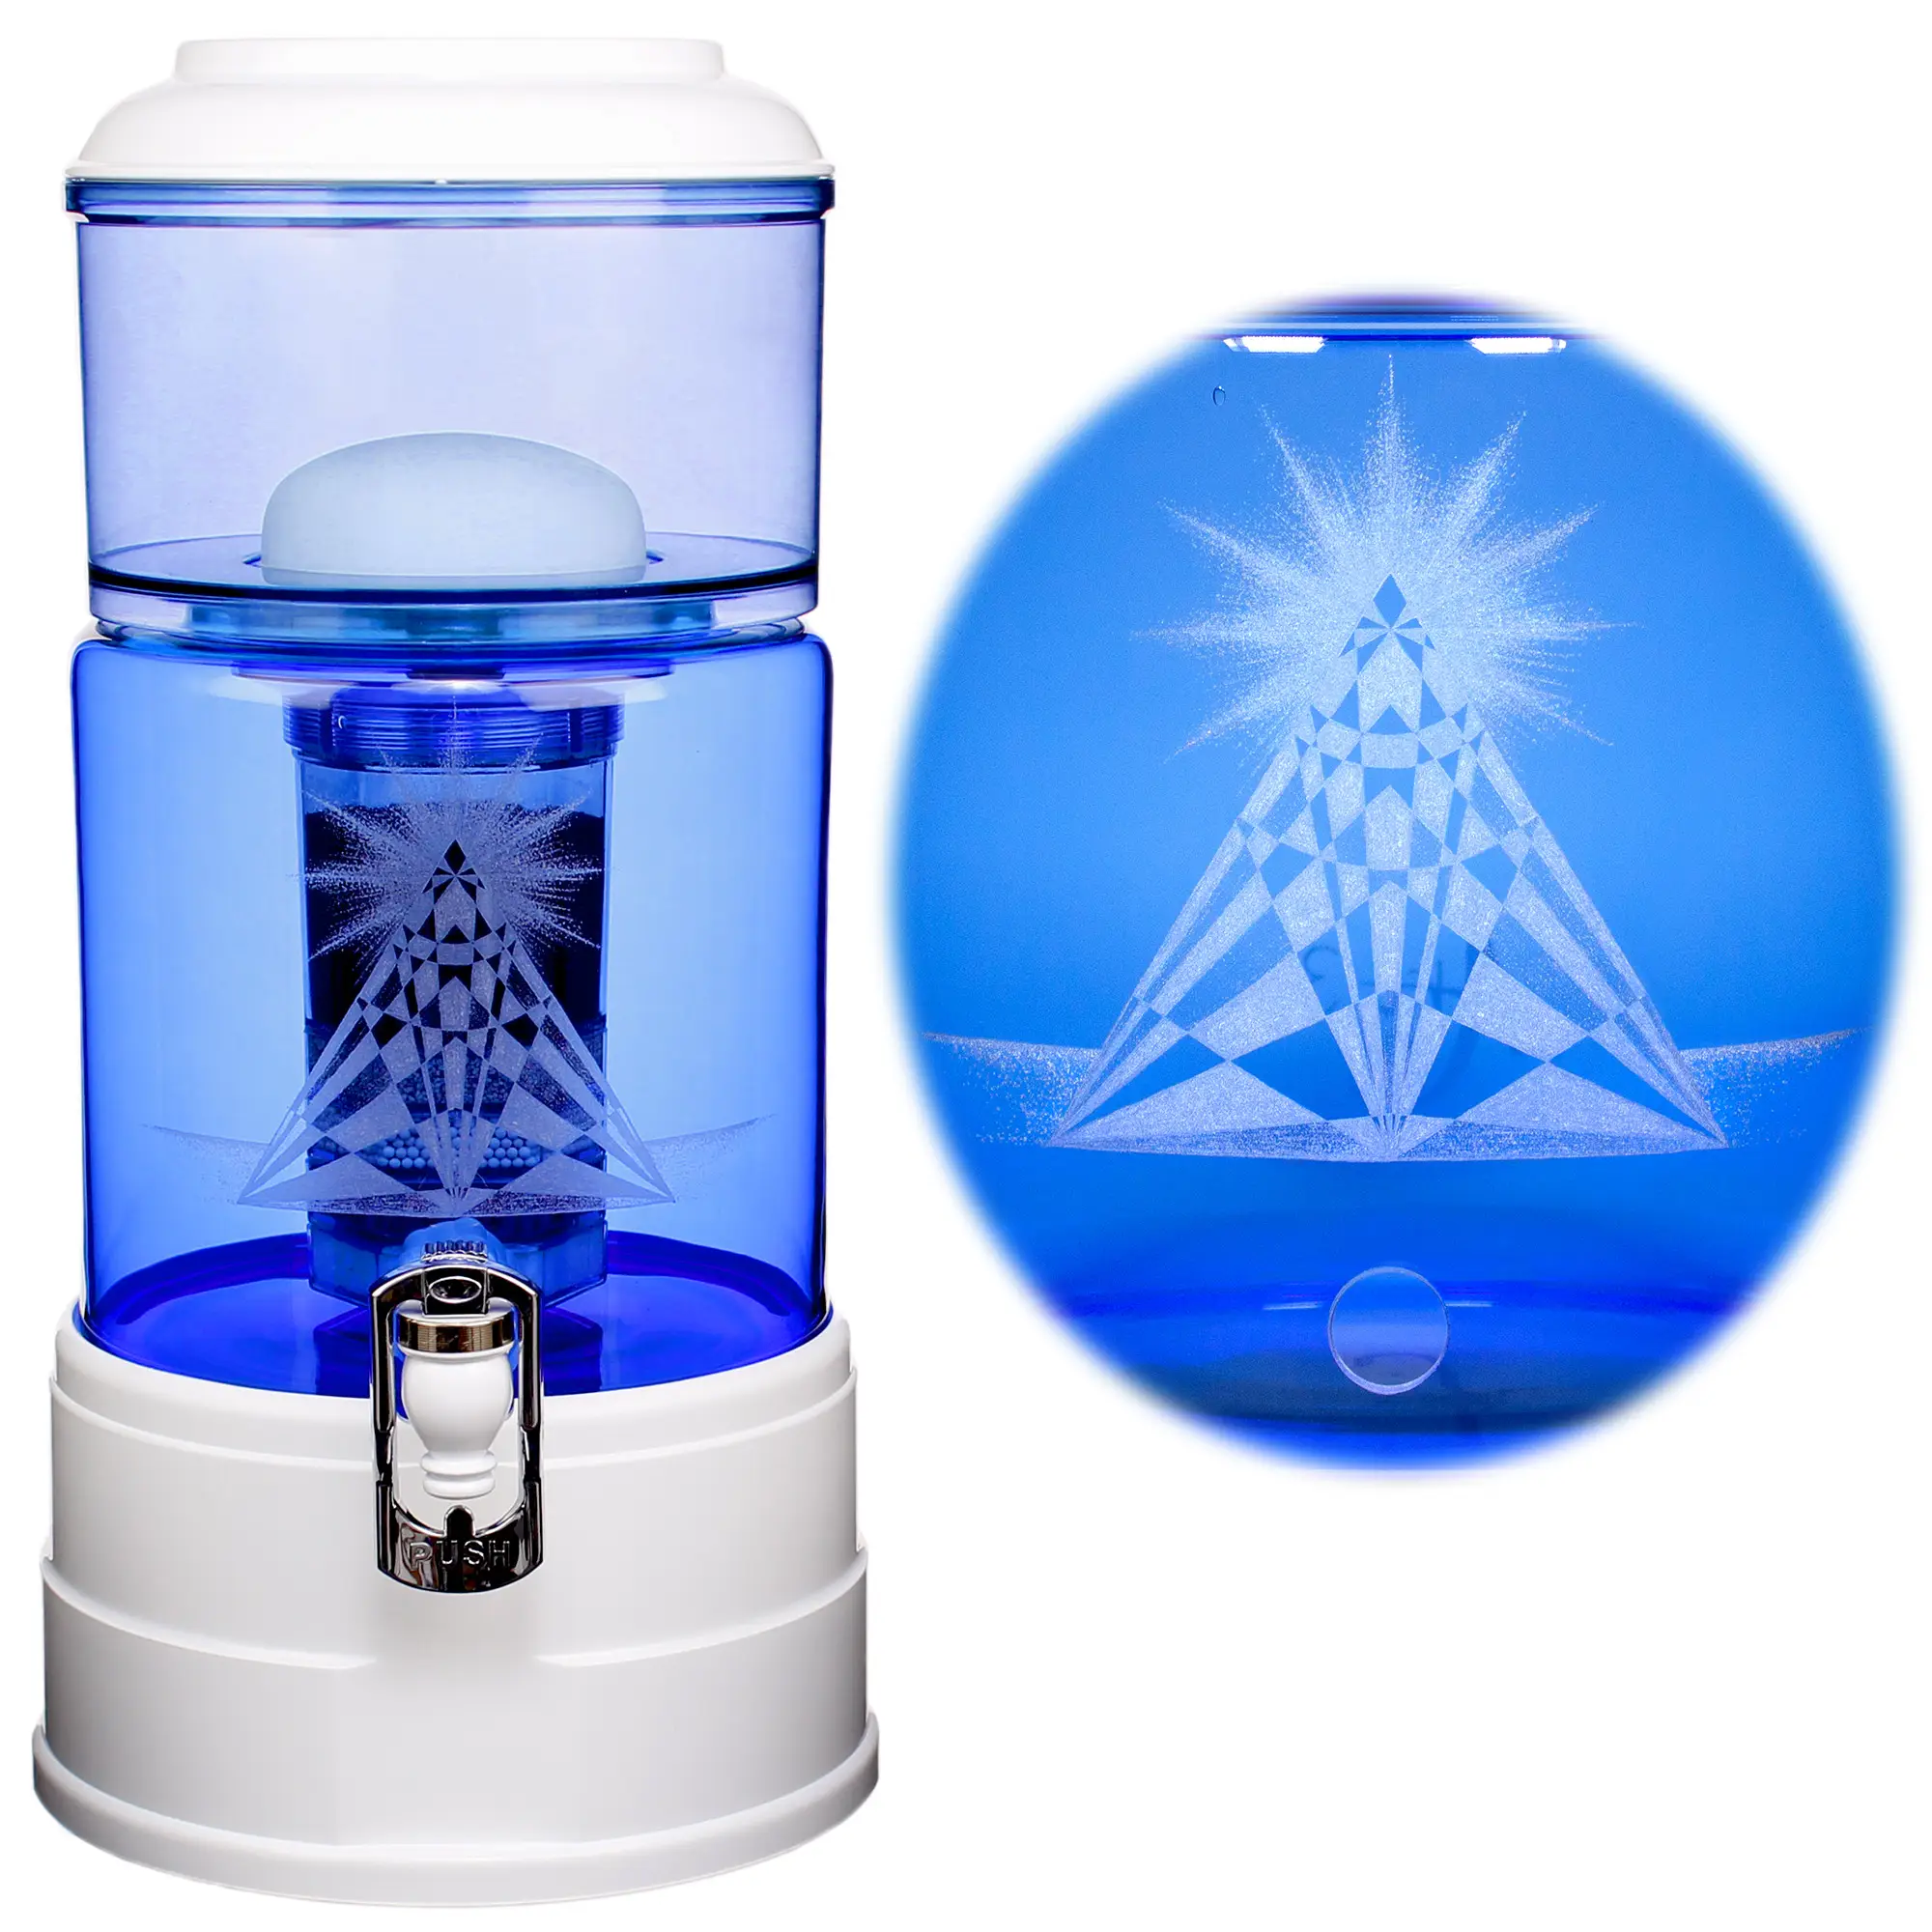 Ein Acala Wasserfilter Mini mit einer Handgravur. Die Gravur zeigt, auf blauem Glas, ein Dreieck mit Muster und einer Sonnendarstellung an der Spitze. Rechts vom Wasserfilter ist eine Nahaufnahme der Gravur.